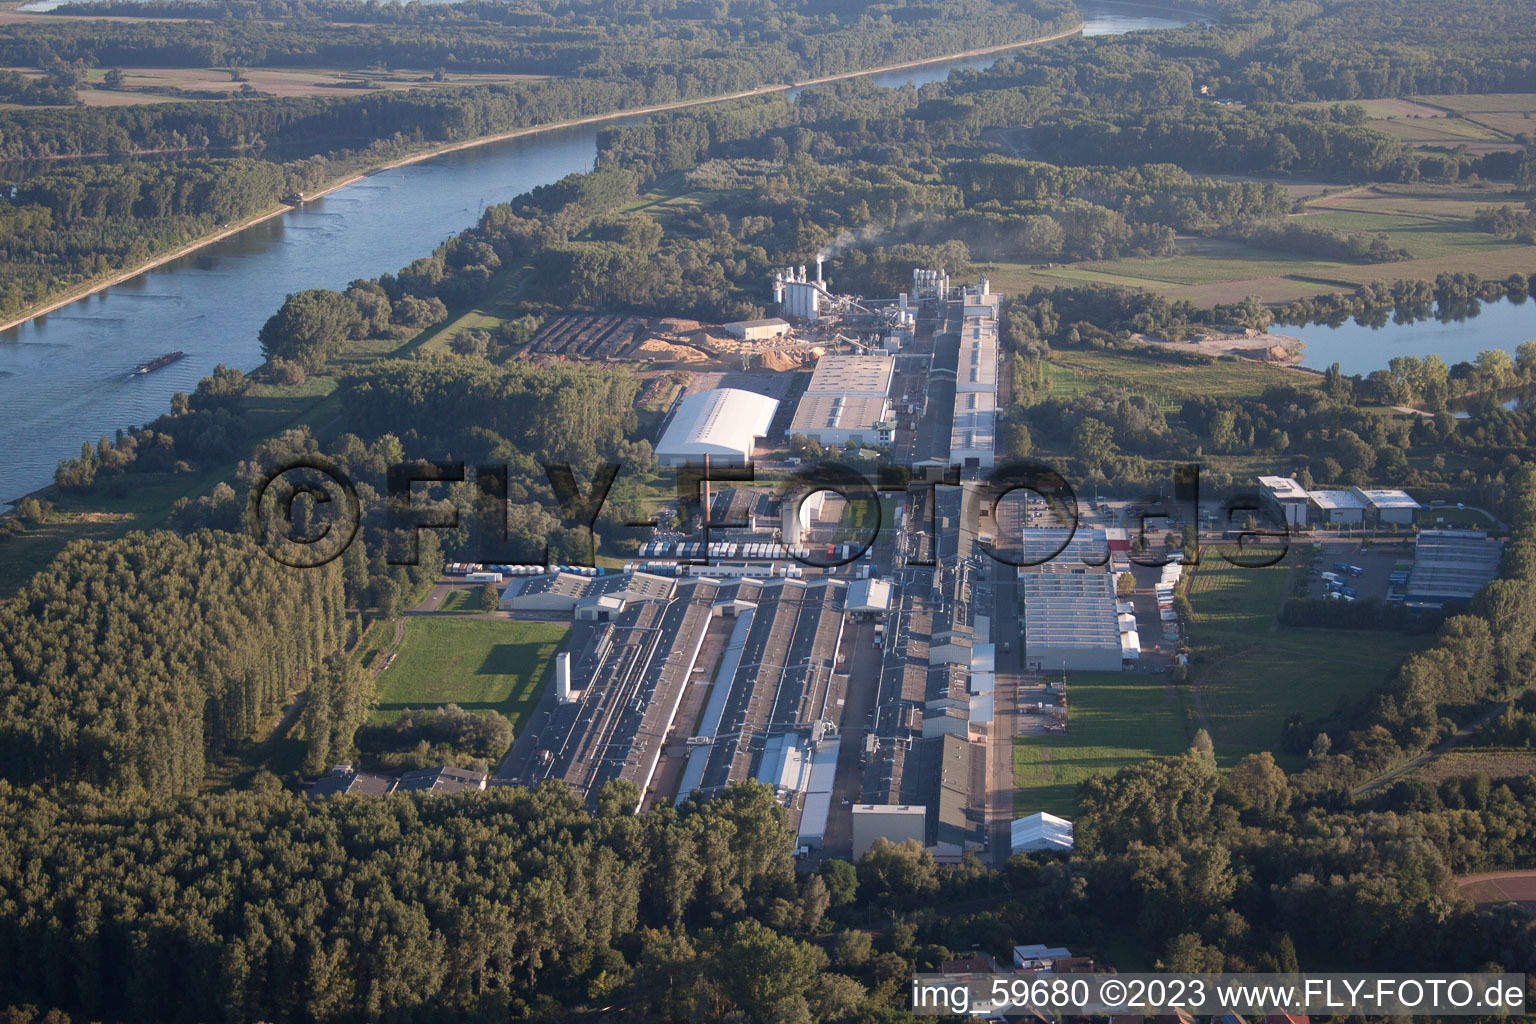 Schrägluftbild von Sondernheim, Industrie am Rhein in Germersheim im Bundesland Rheinland-Pfalz, Deutschland